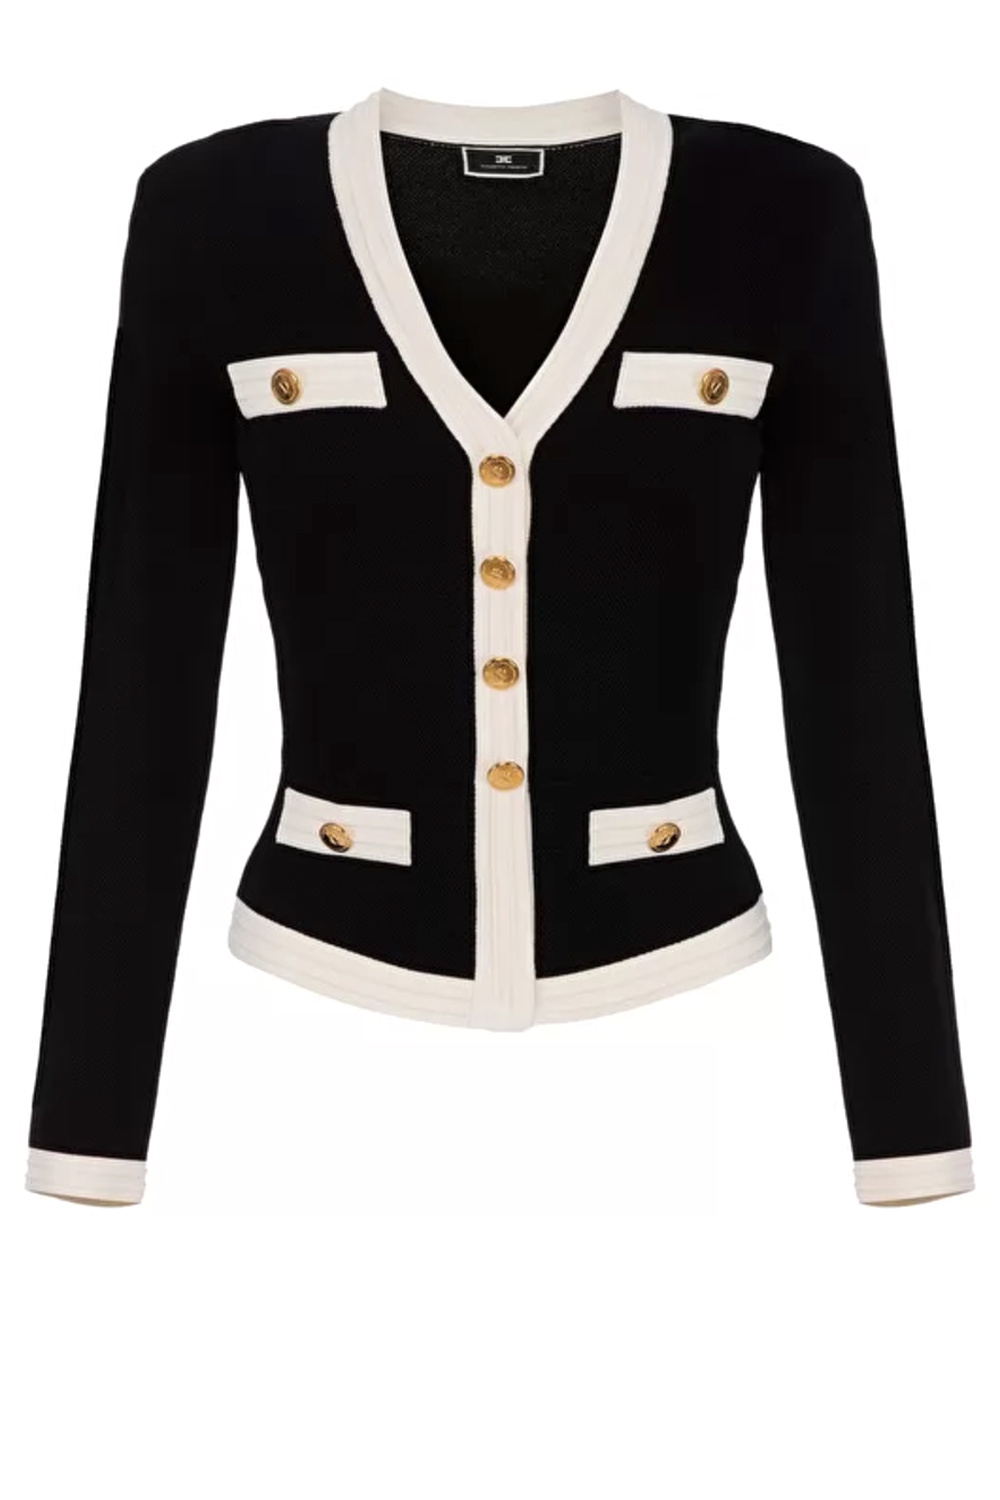 kompas niezen vermomming Elisabetta Franchi vest jasje met witte bies Zwart - Dresscode